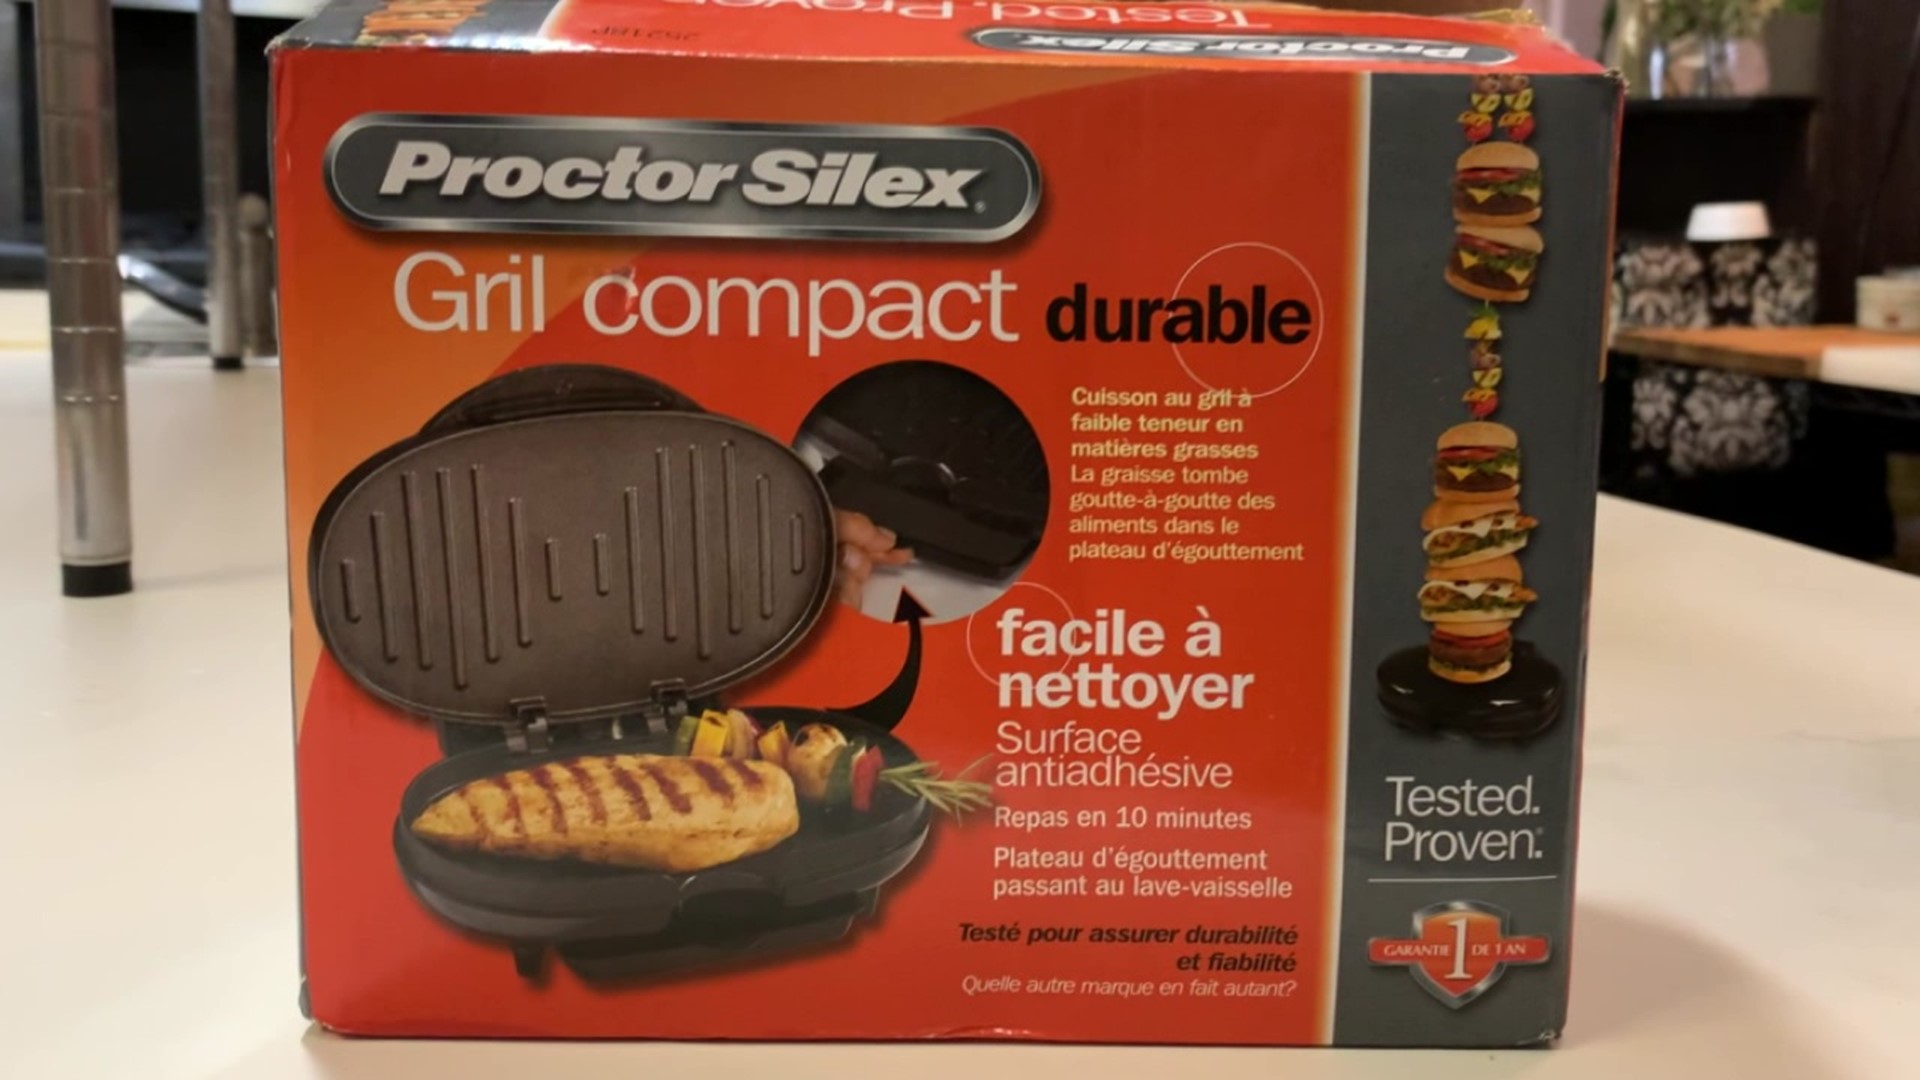 Proctor Silex Sandwich Maker